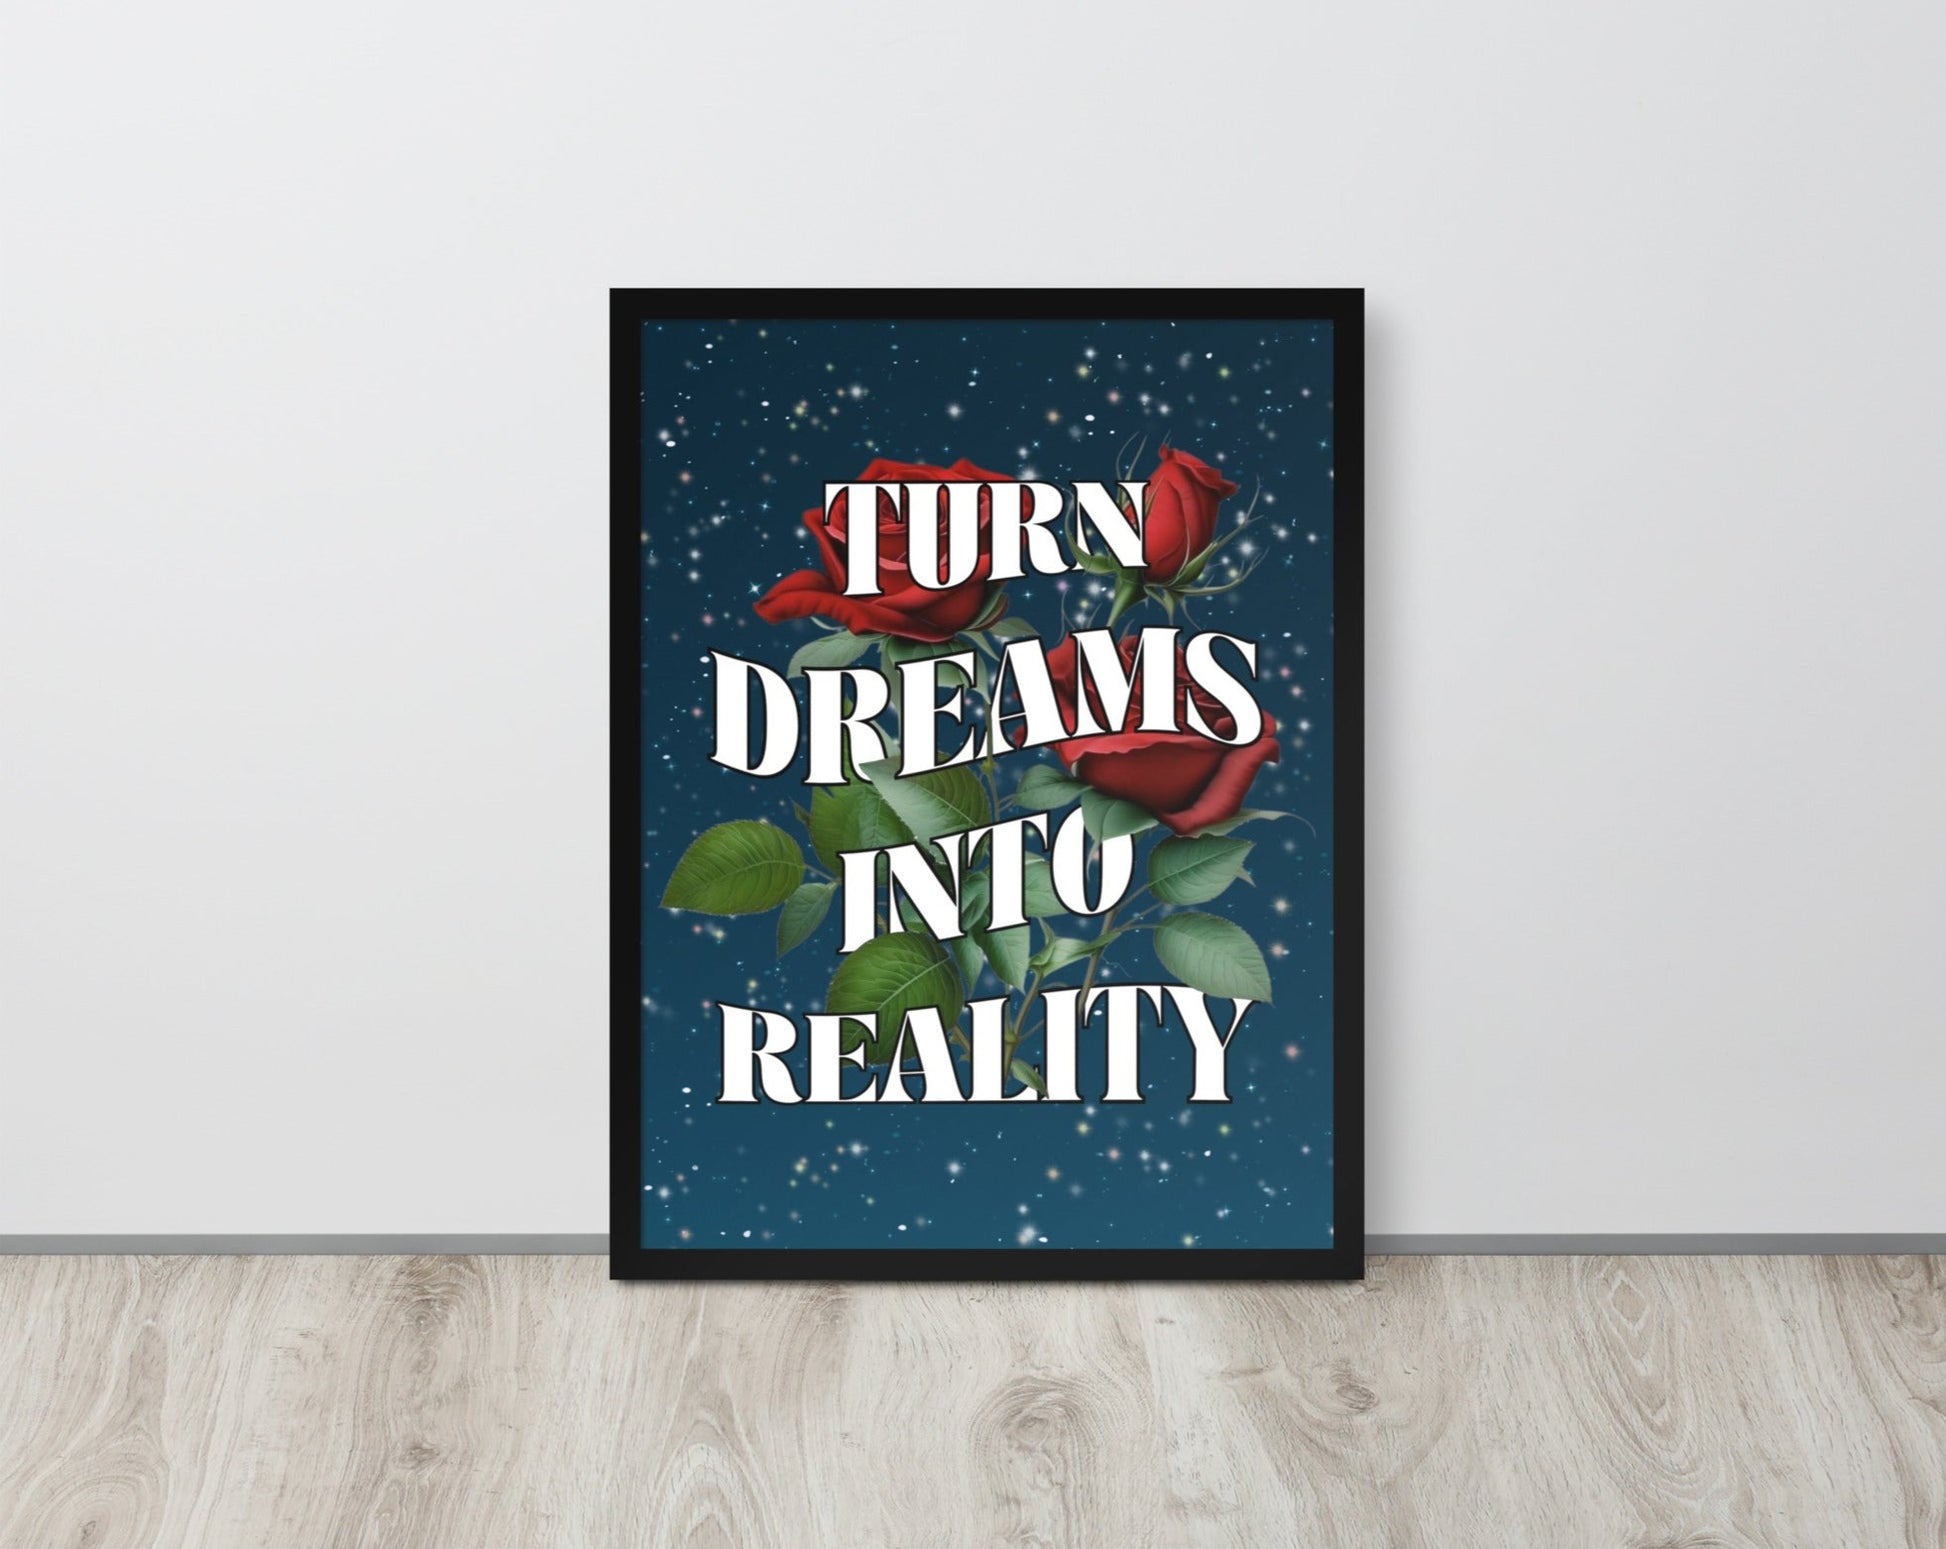 Turn dreams into reality wall art